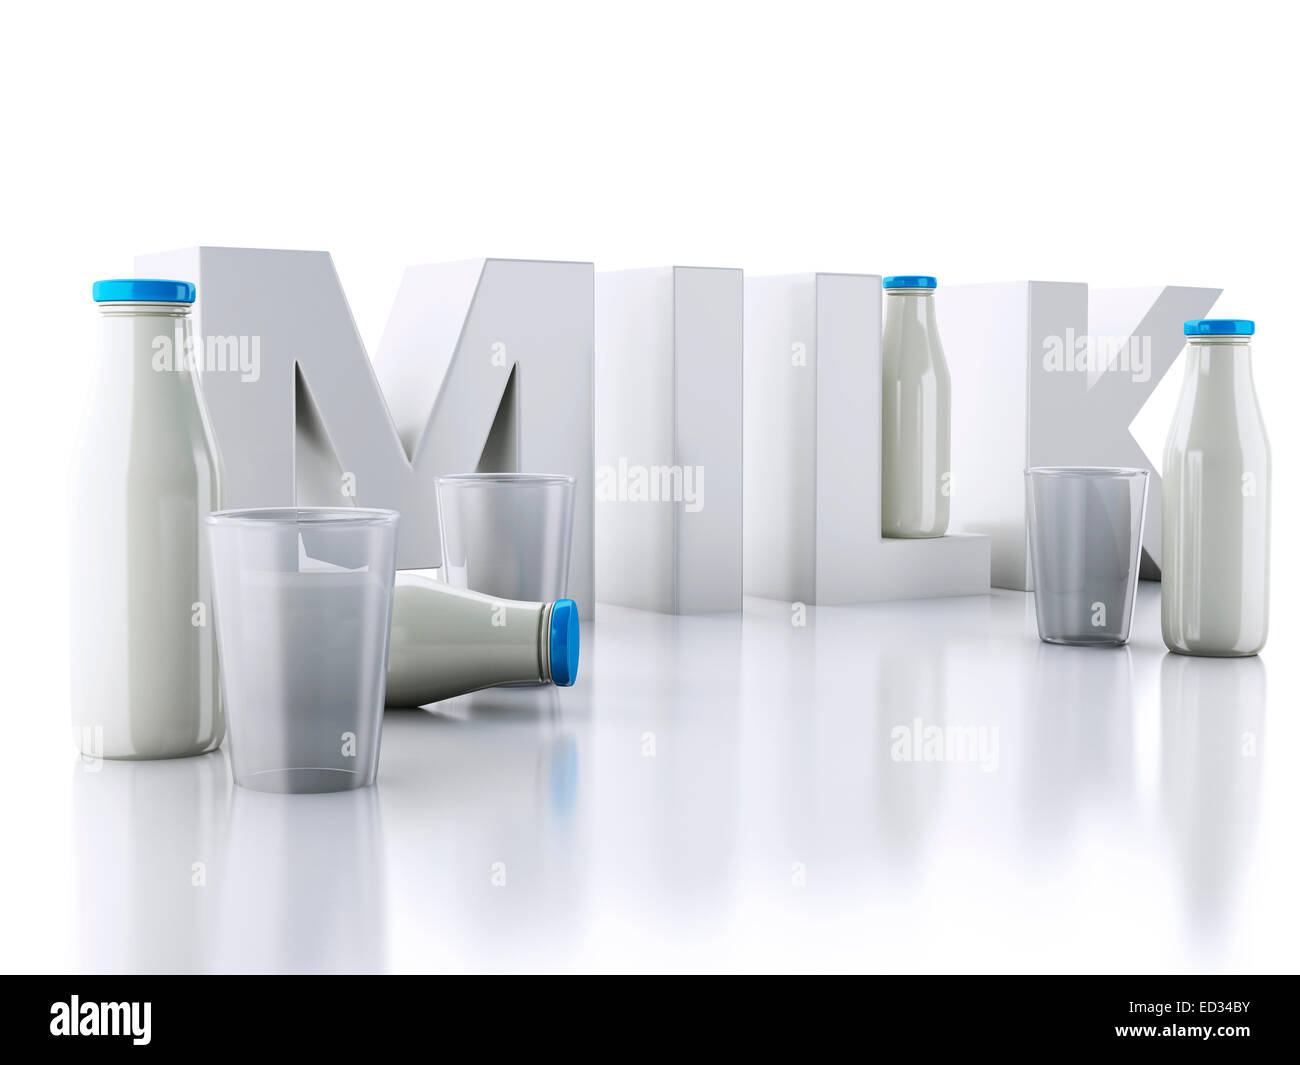 Moteur de rendu 3d illustration. Les bouteilles de lait et de verre isolé sur fond blanc. Banque D'Images